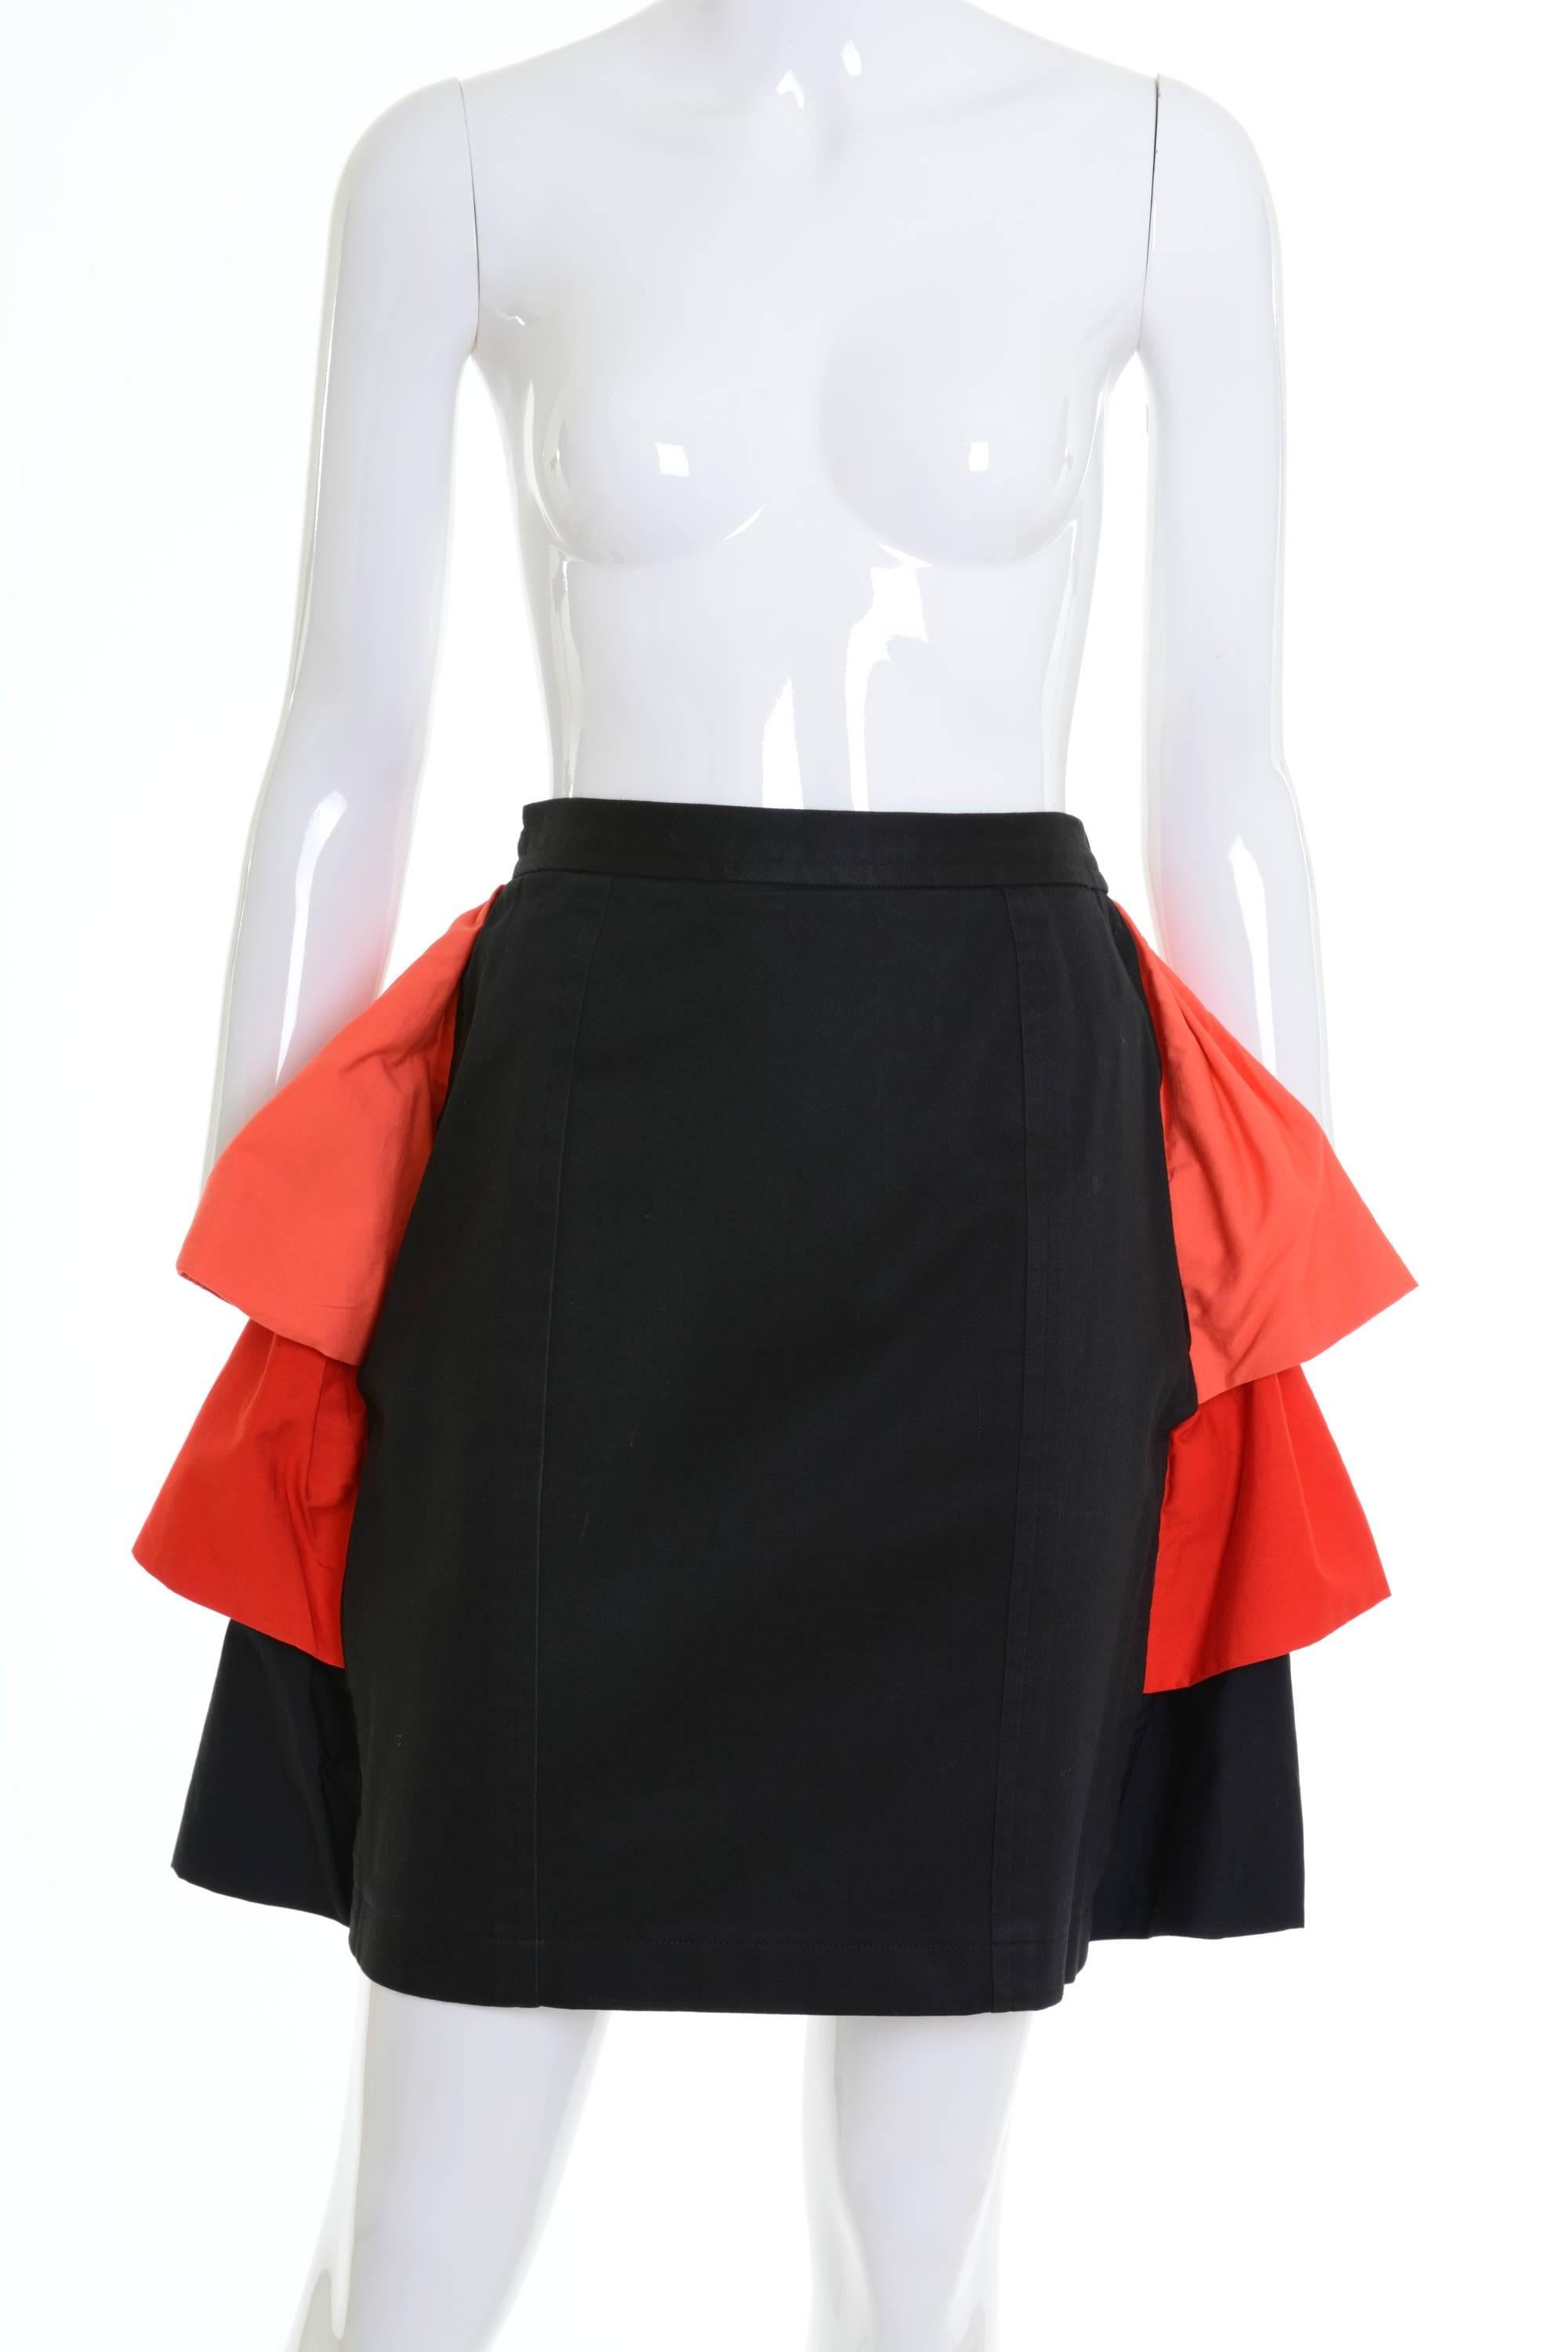 1980s YVES SAINT LAURENT Rive Gauche Black and Orange Flounced Suit Skirt 2